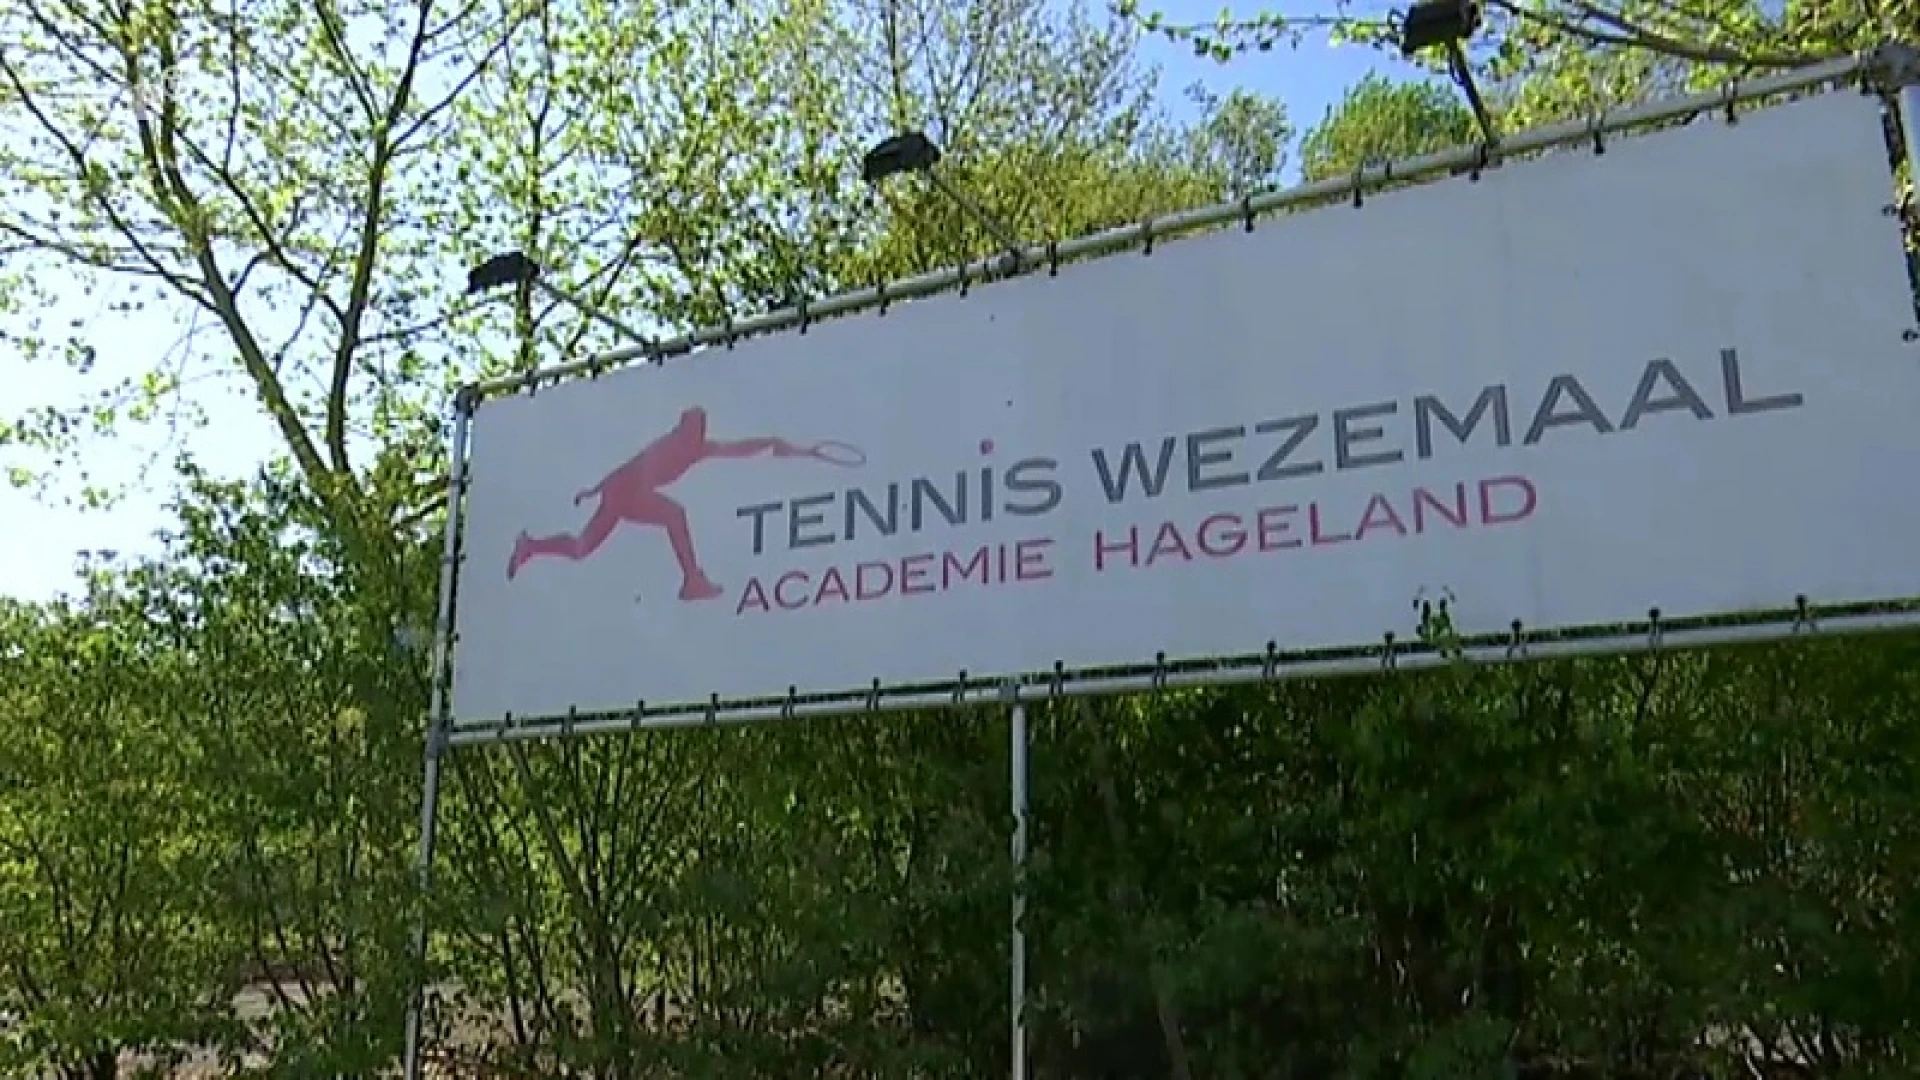 "Enkelspel is perfect mogelijk": Tennis Wezemaal klaar voor heropening